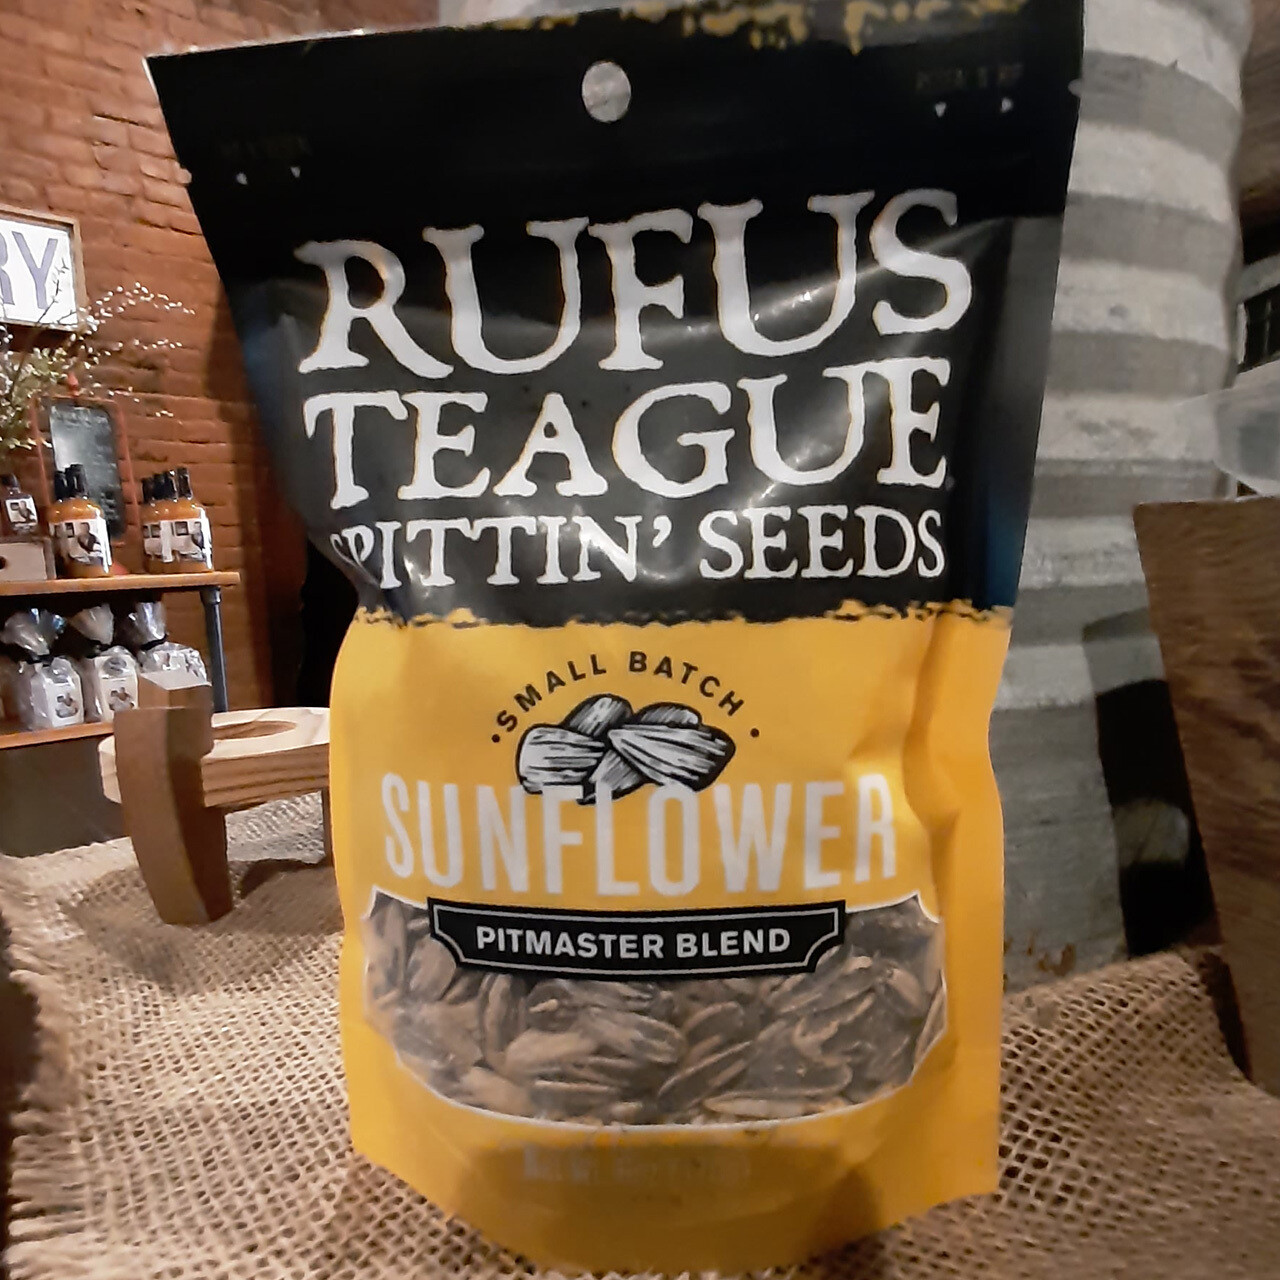 Rufus Teague Pitmaster Blend Sunflower Seeds Bags